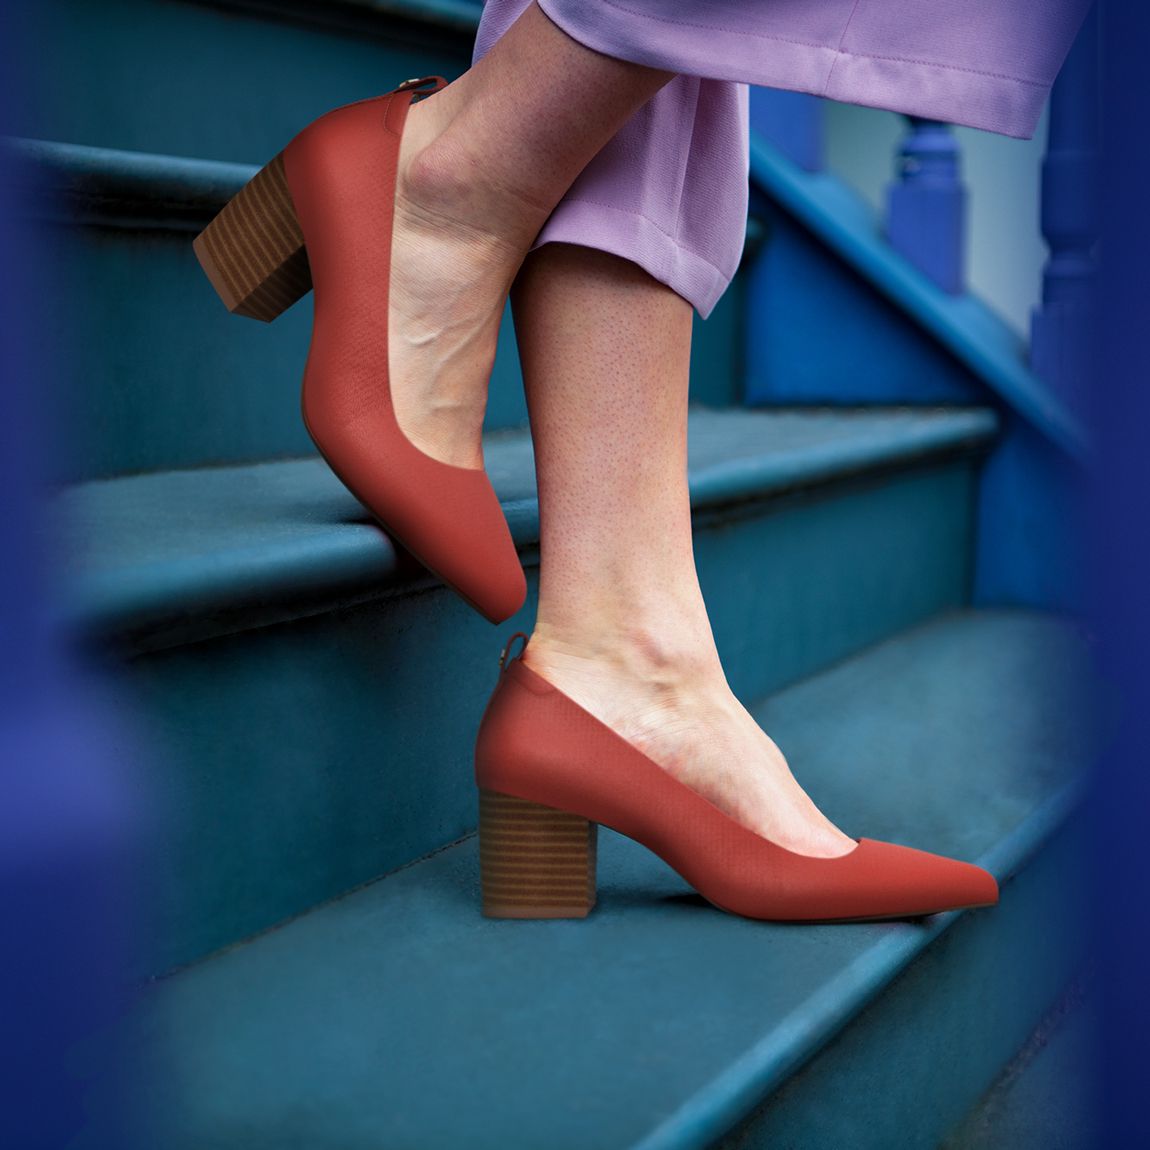 Women's Best Shoes for Flat Feet | FitVille UK – FitVilleUK